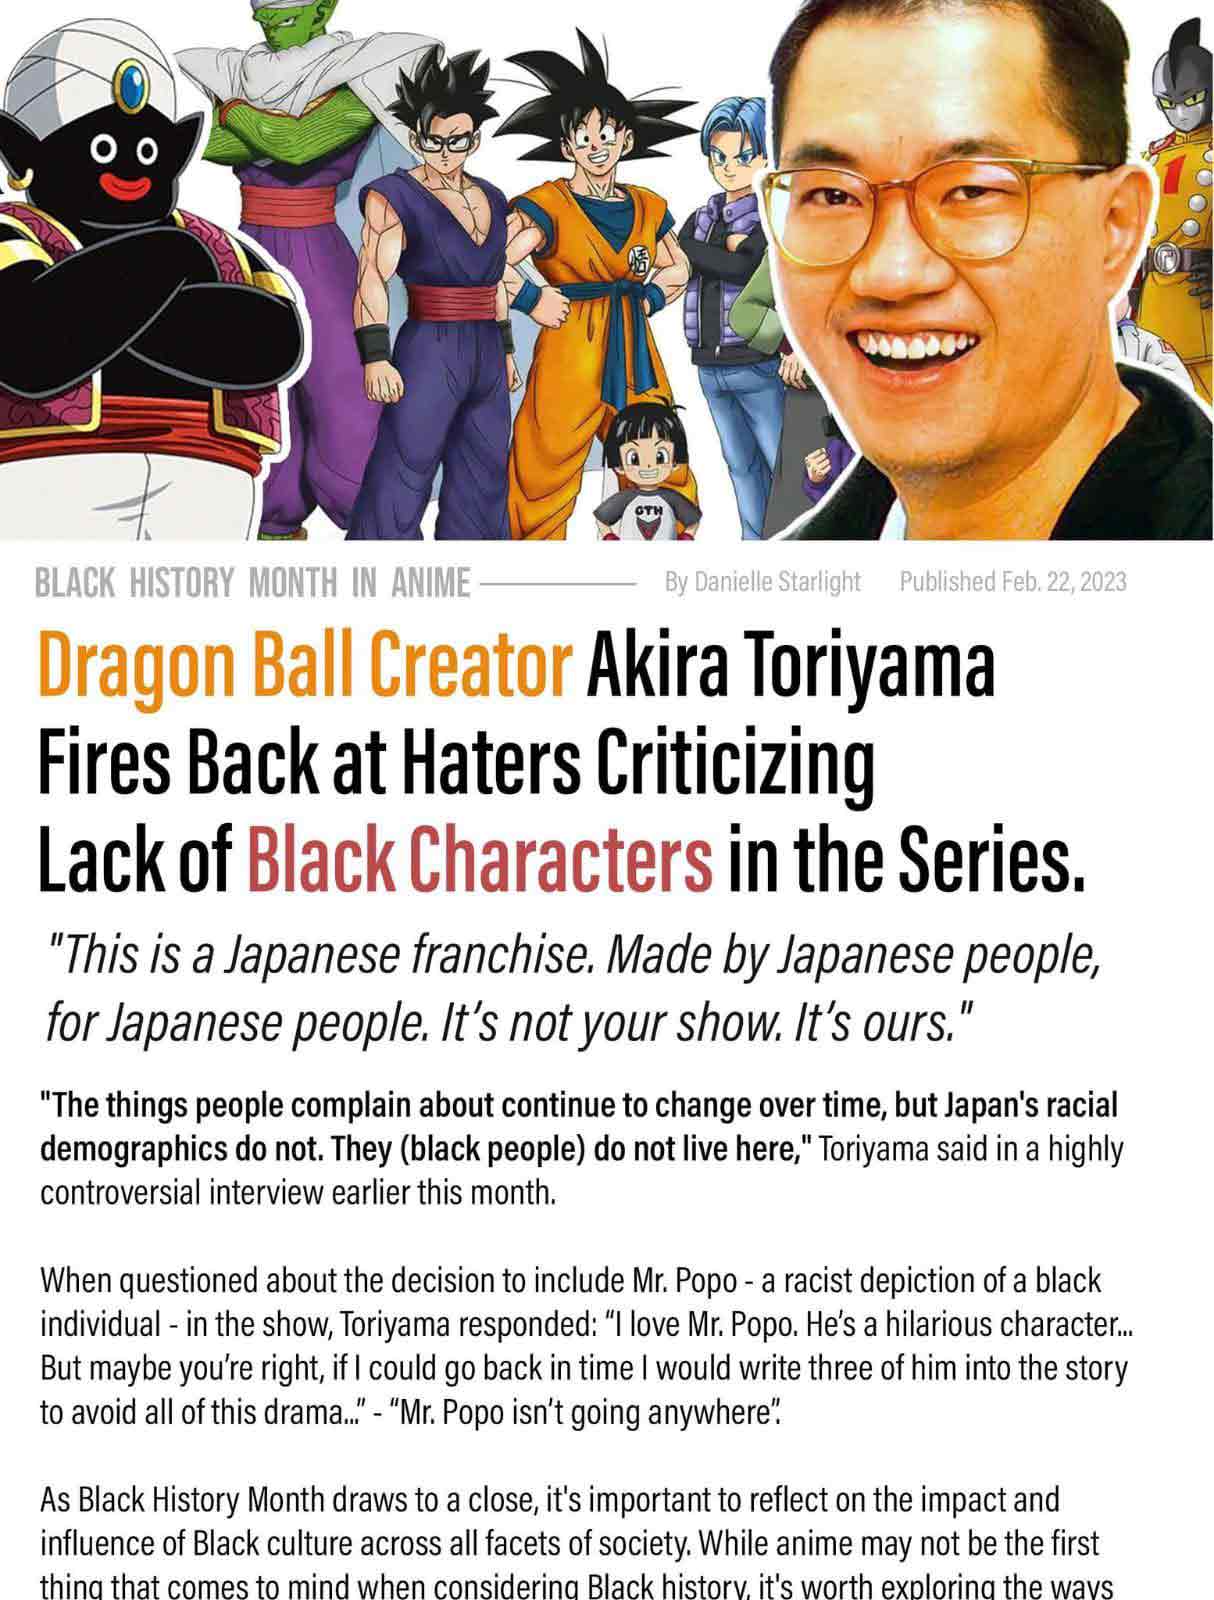 Tranh cãi phân biệt chủng tộc của Akira Toriyama3